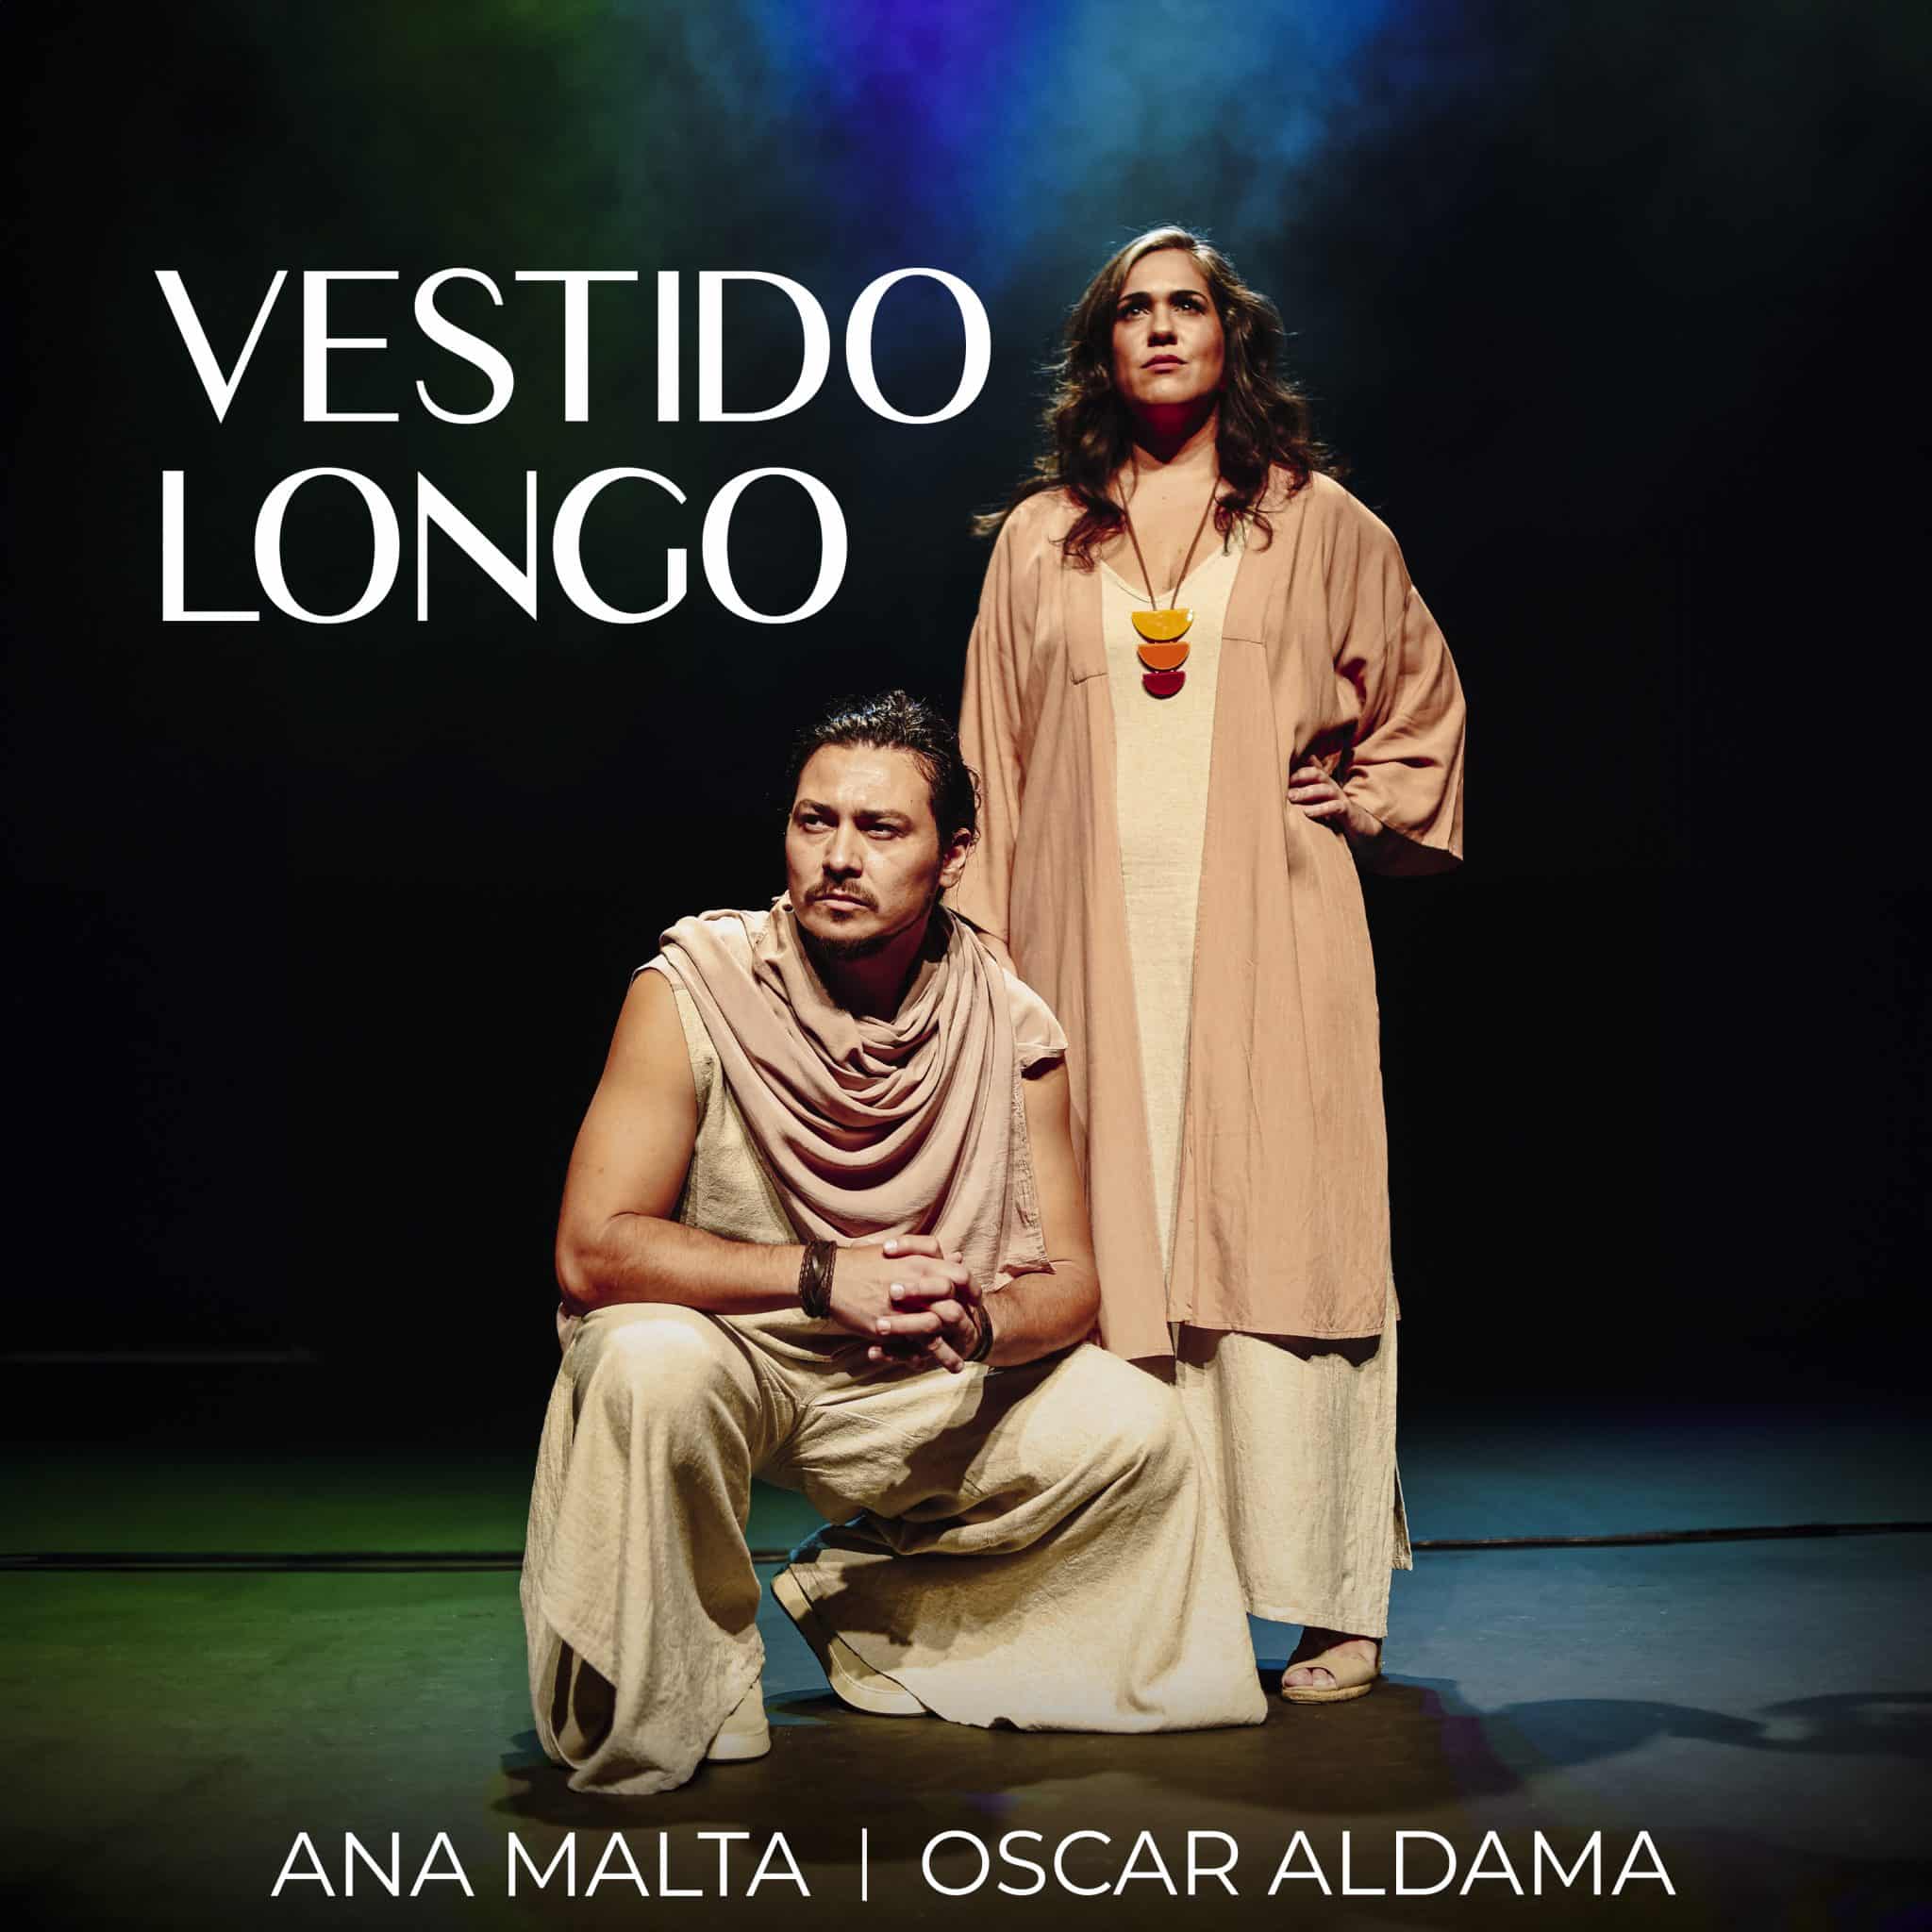 revistaprosaversoearte.com - Ana Malta e Oscar Aldama lançam single ‘Vestido longo’